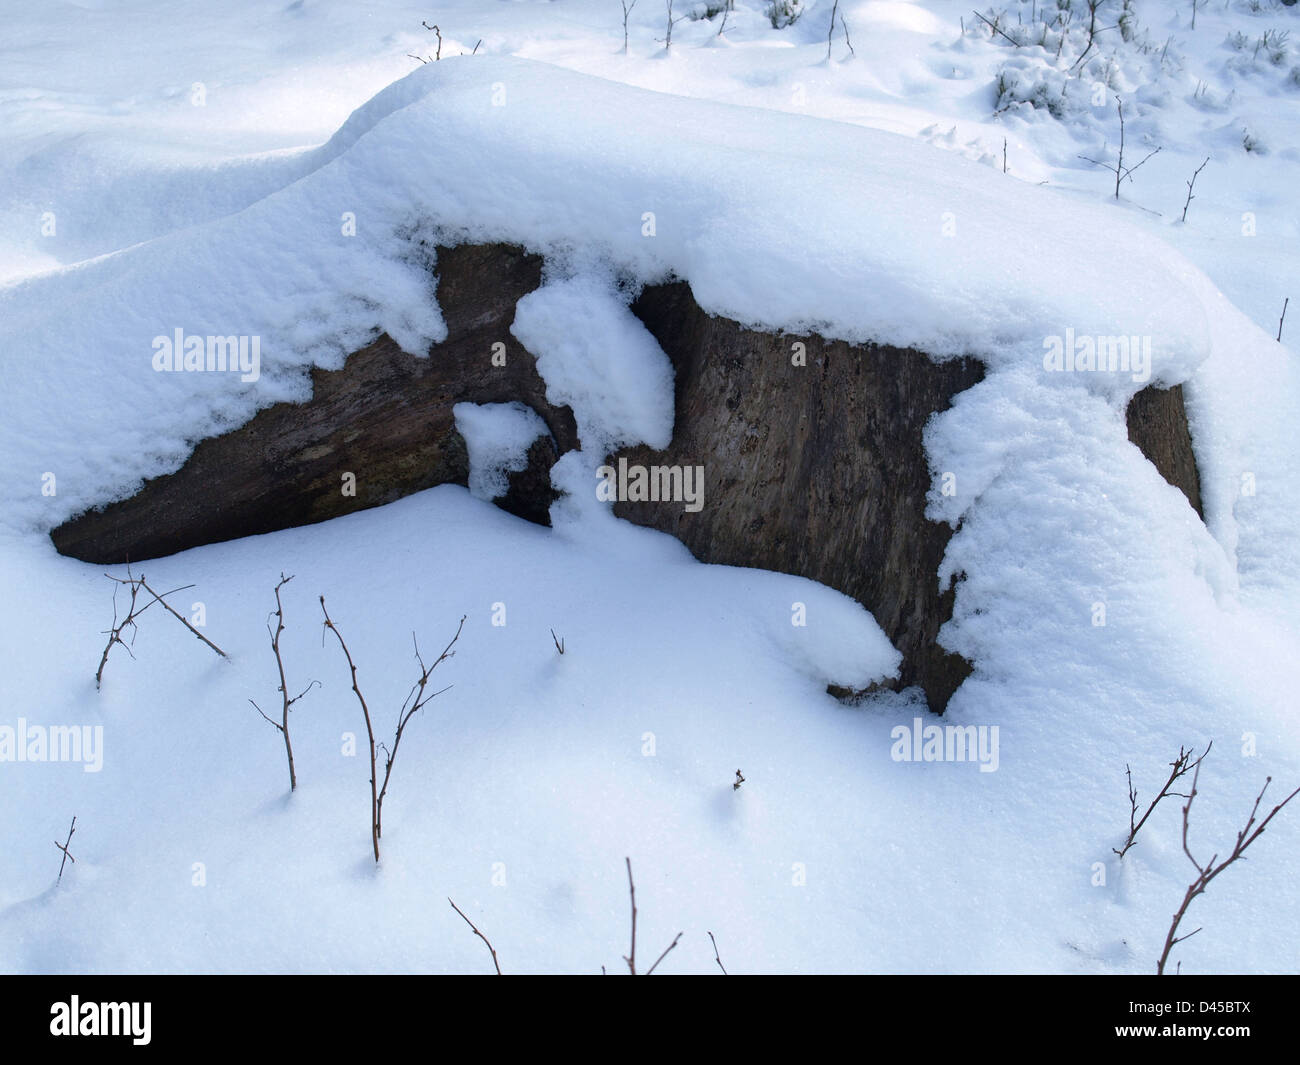 Stump nevadas en invierno Foto de stock